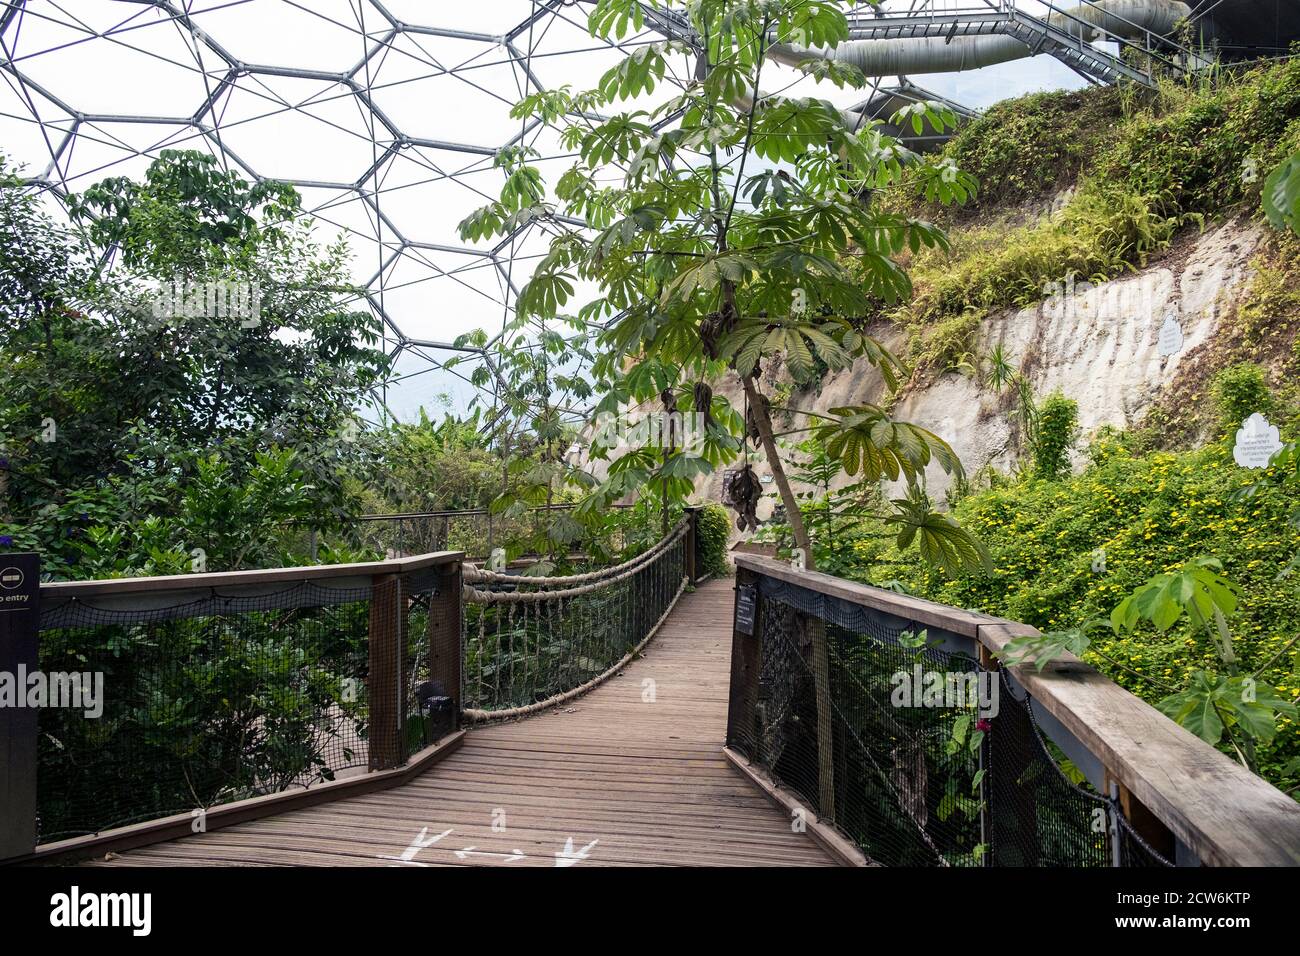 Subtropische Pflanzen und Bäume im Regenwald Biome im Eden Projektkomplex in Cornwall. Stockfoto